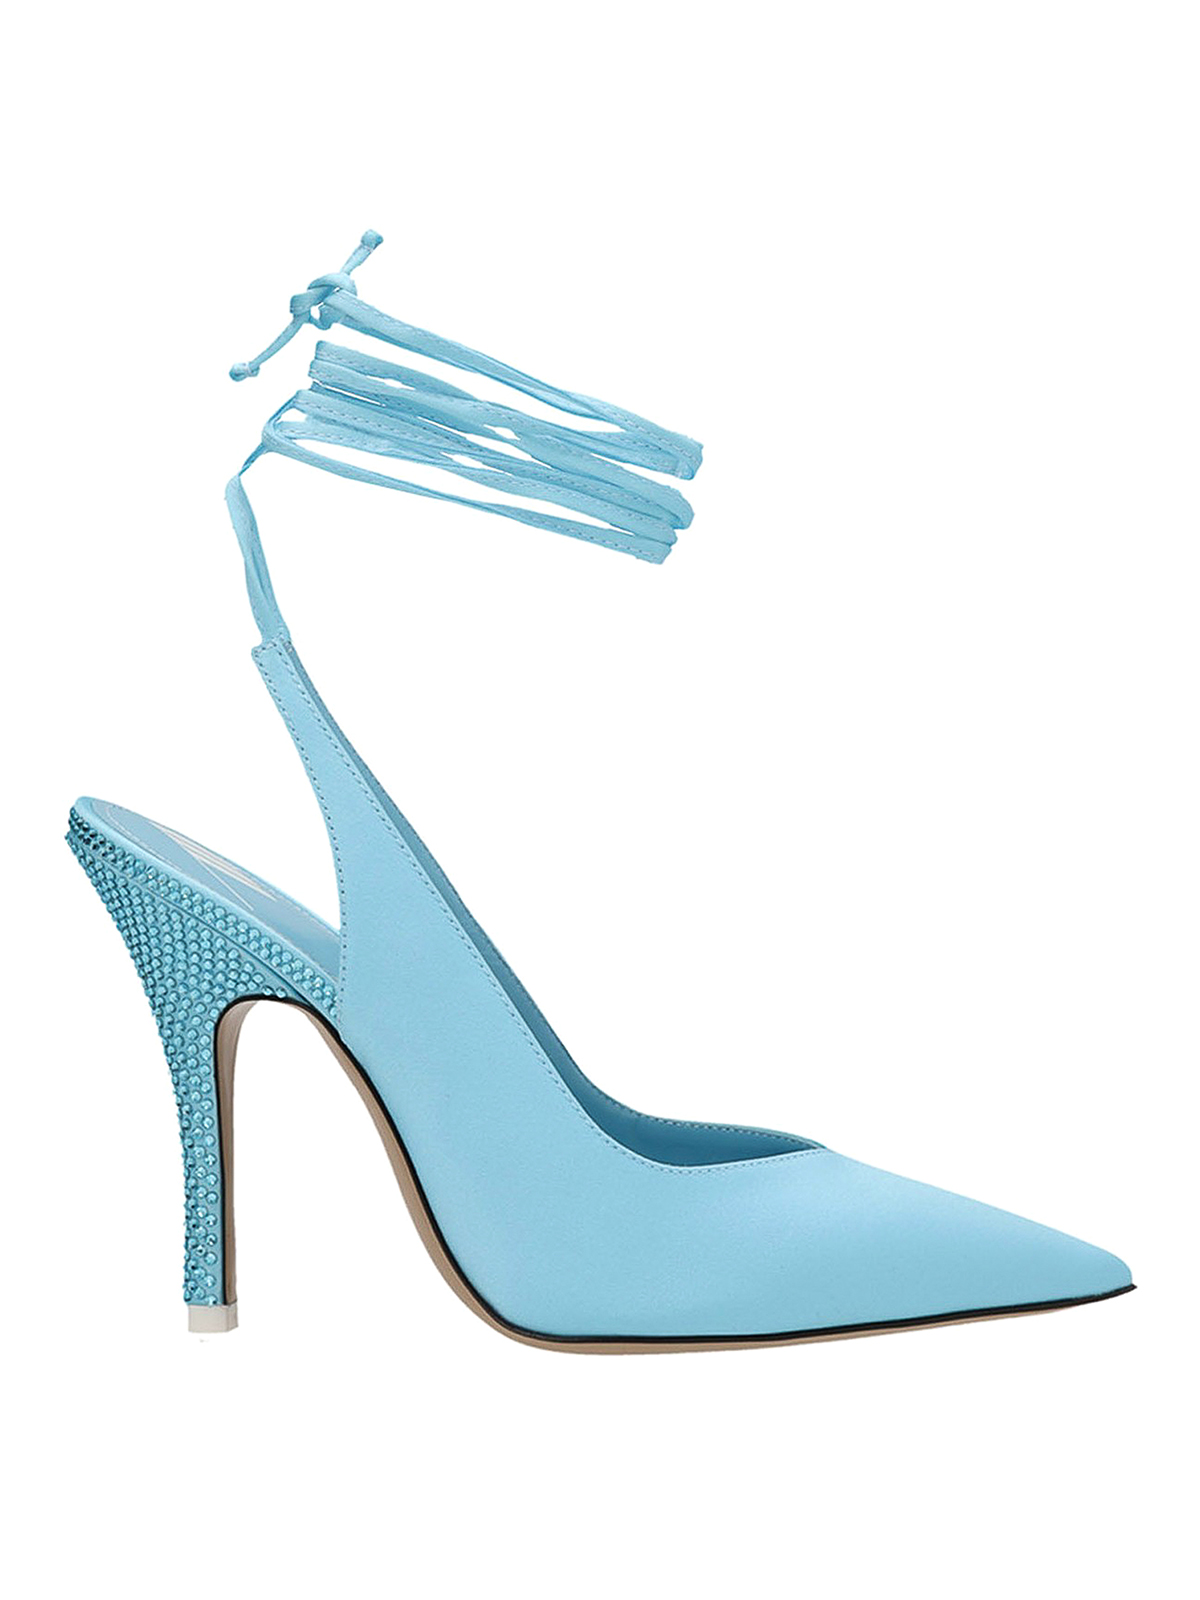 Shop Attico Zapatos De Salón - Venus In Light Blue